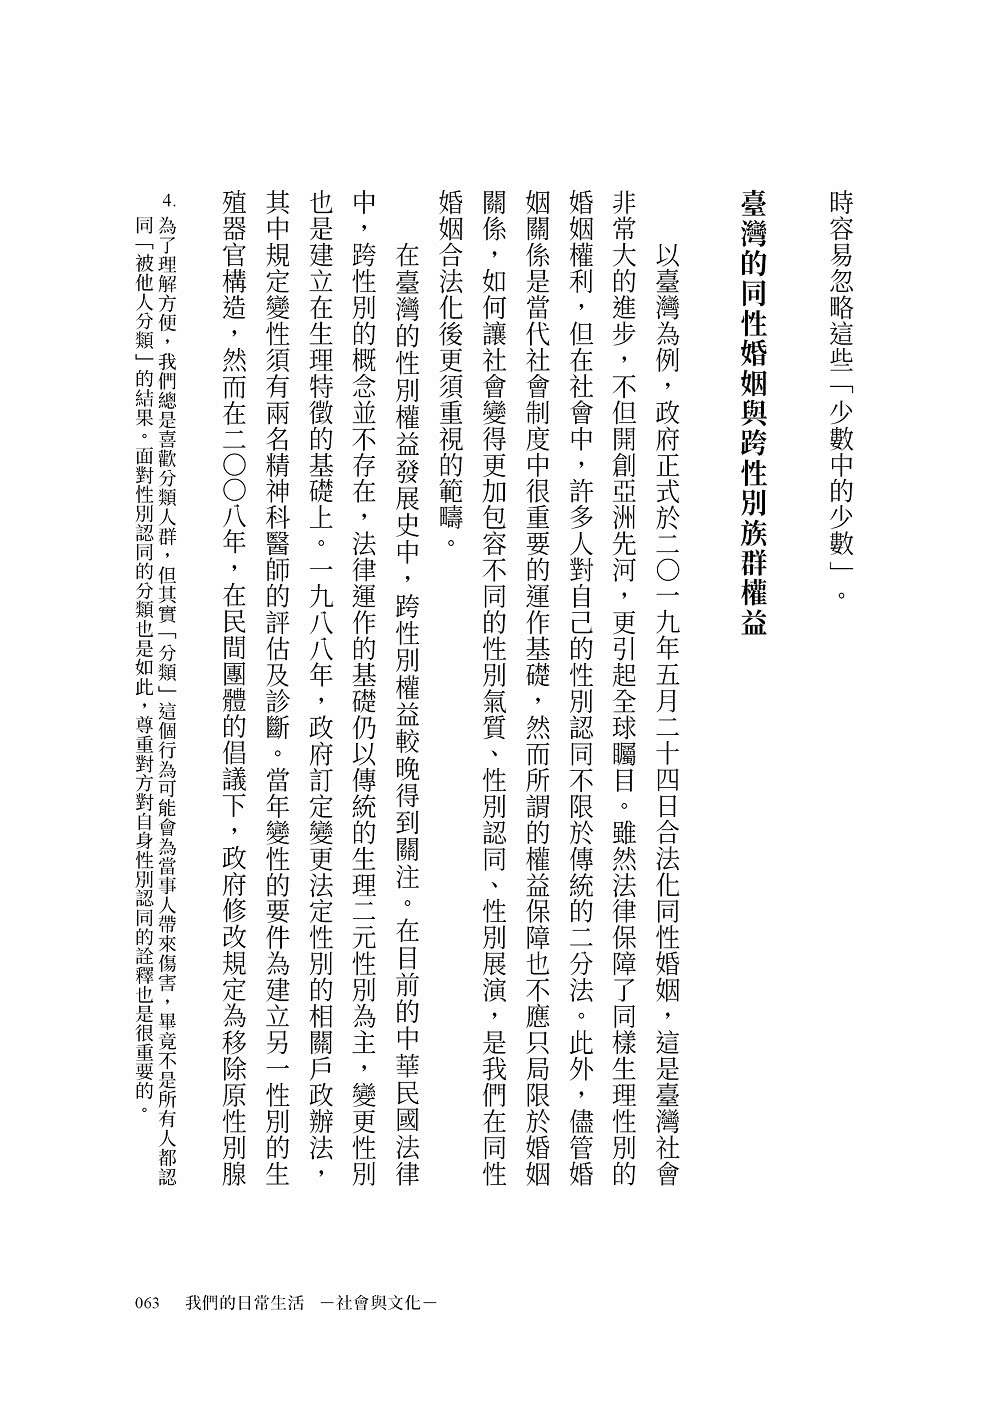 寫給公民的40堂思辨課：人氣知識平台「公民不下課」，寫給現代台灣人的公民議題讀本！